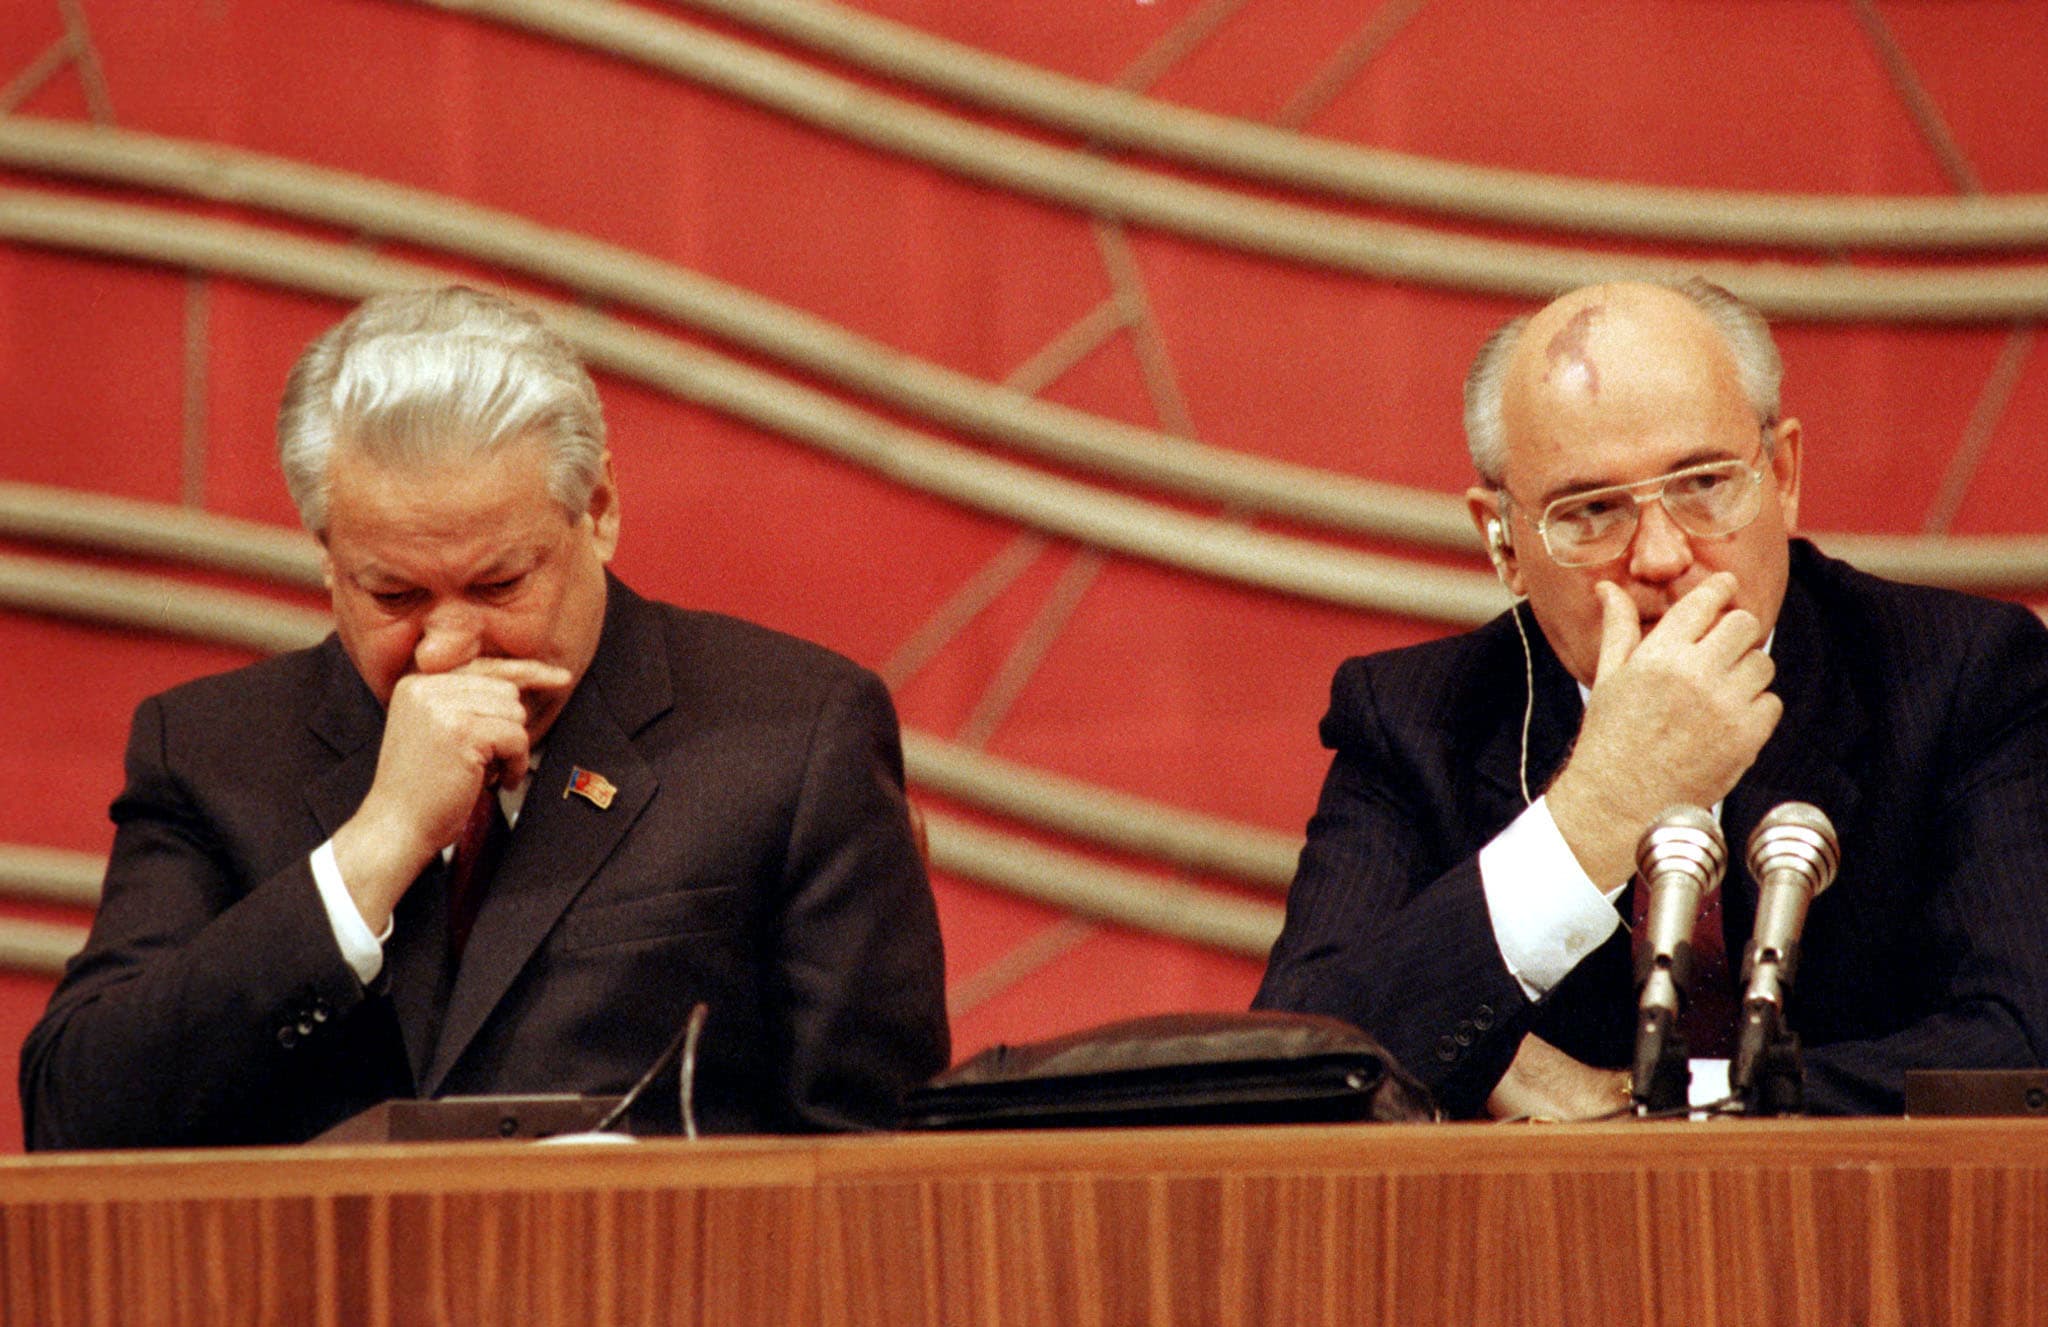 Горбачев распад